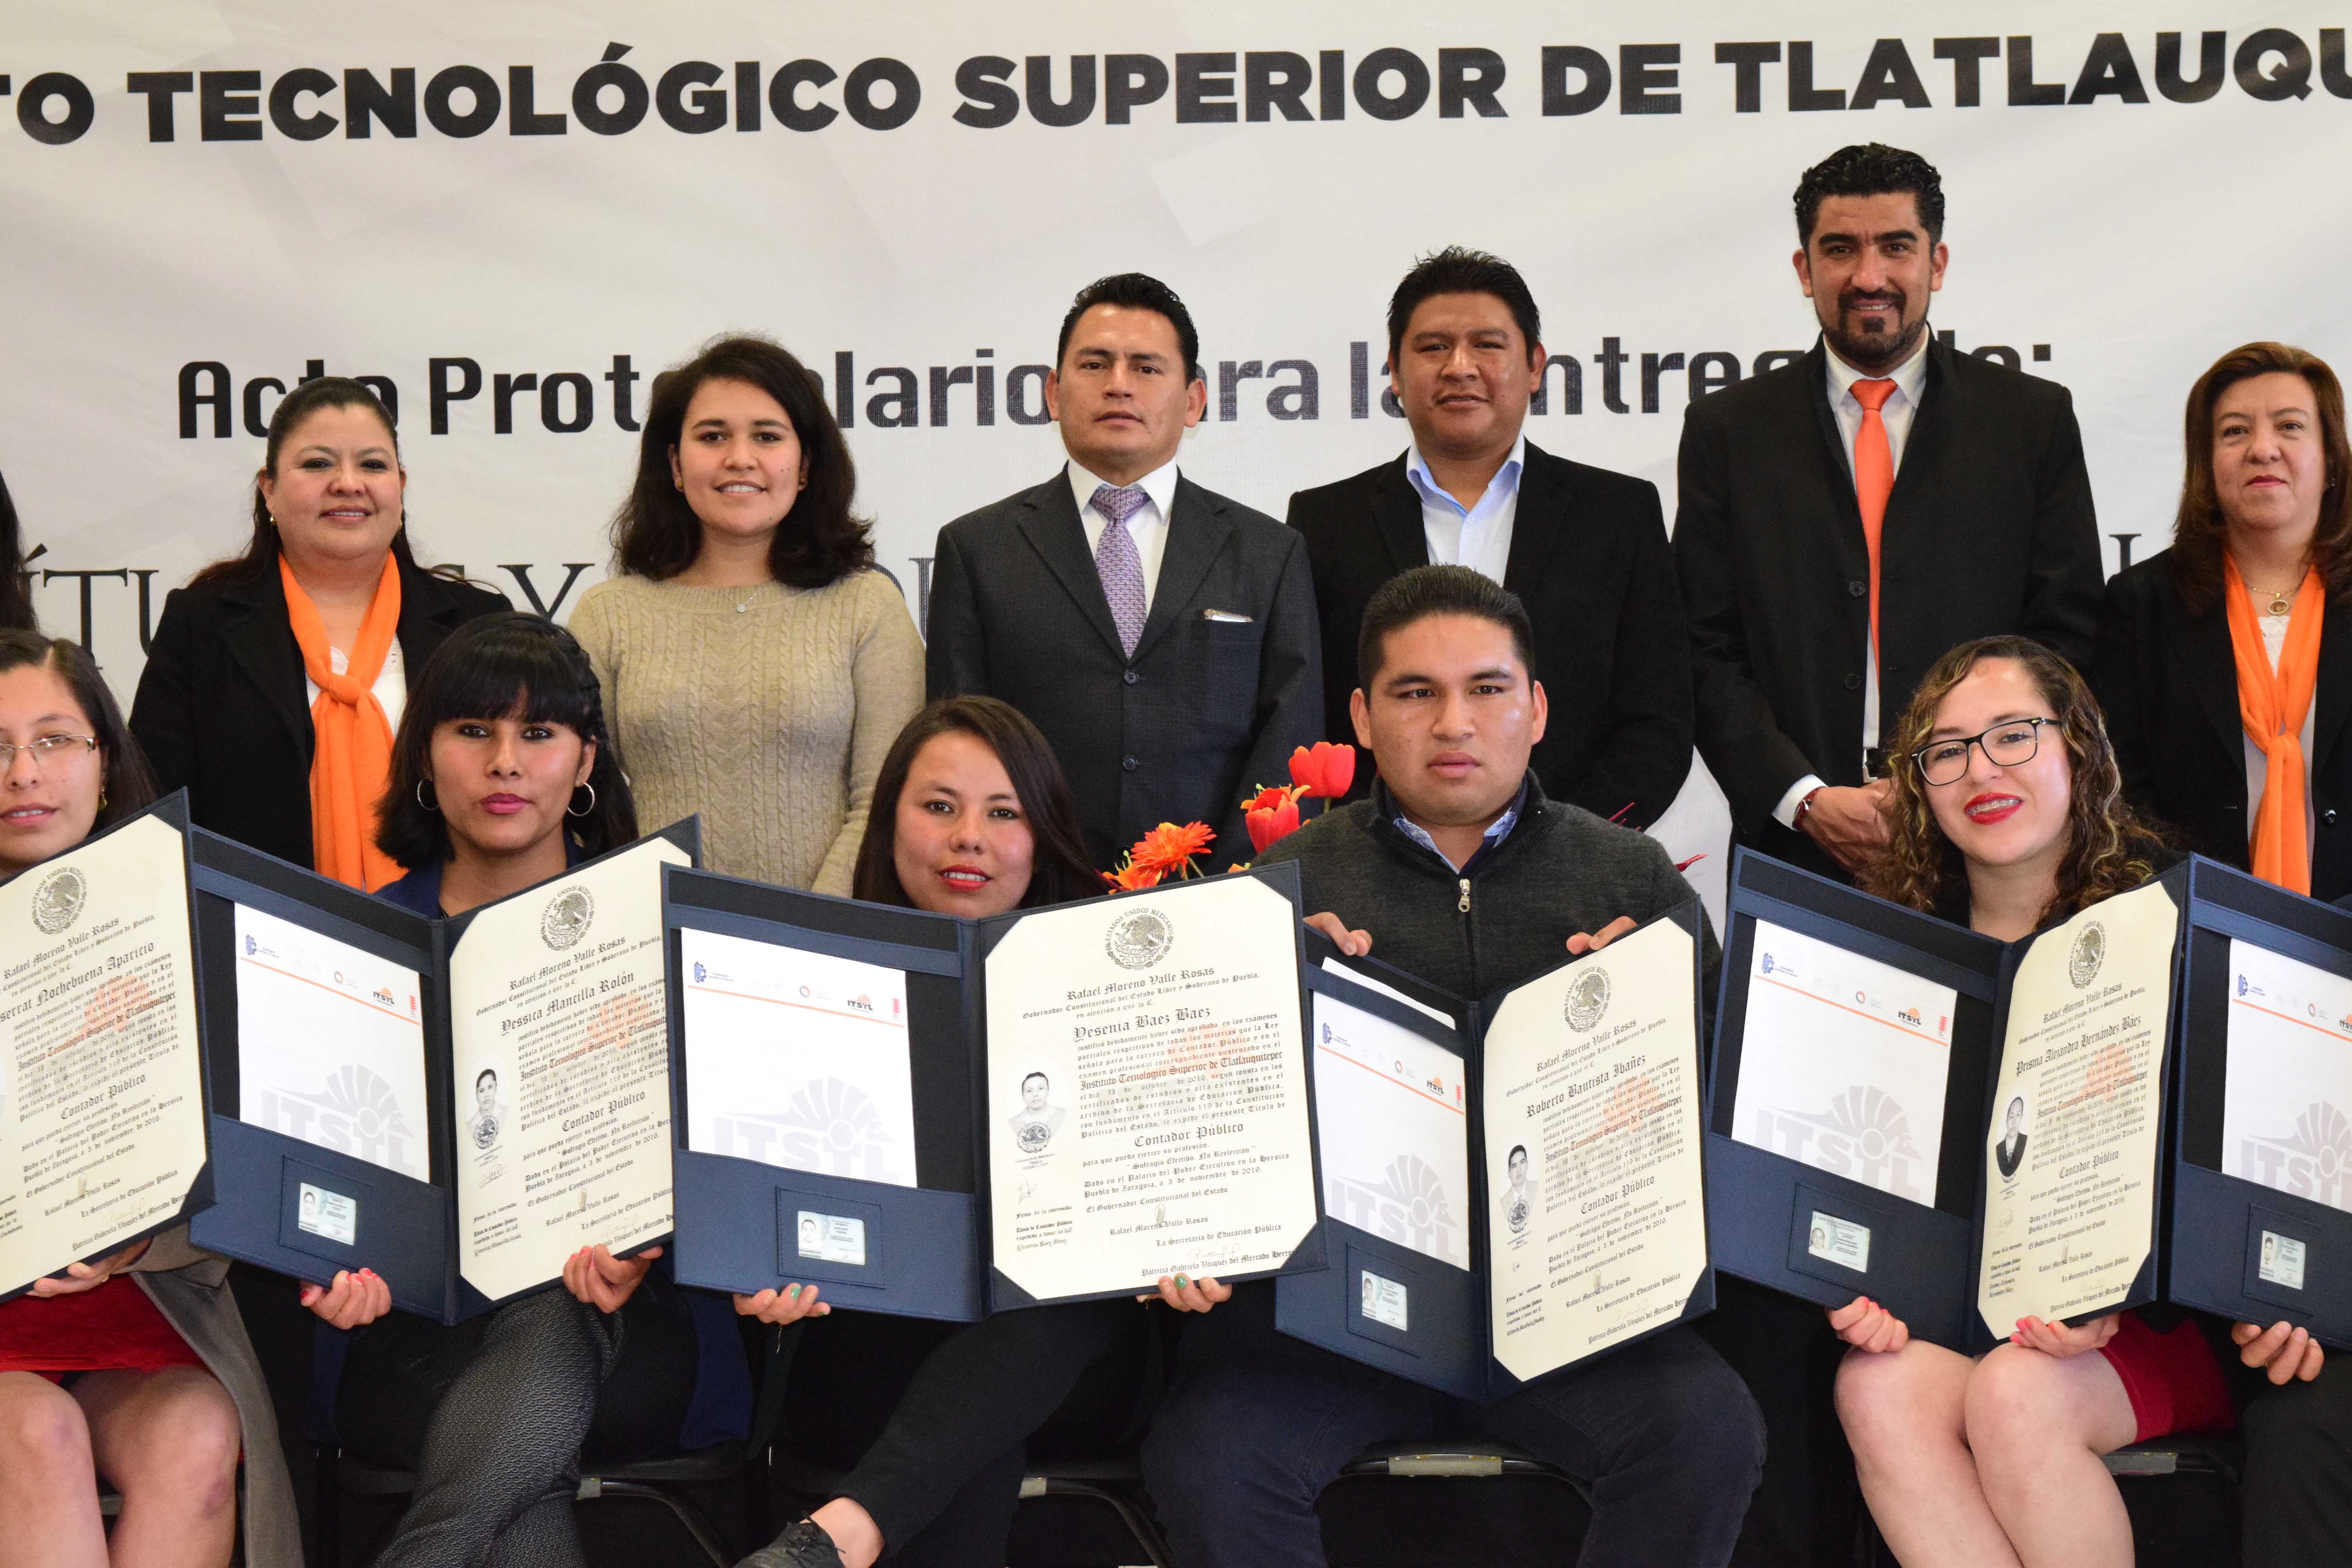 Entregan títulos y cédulas profesionales a egresados del Tecnológico de Tlatlauquitepec